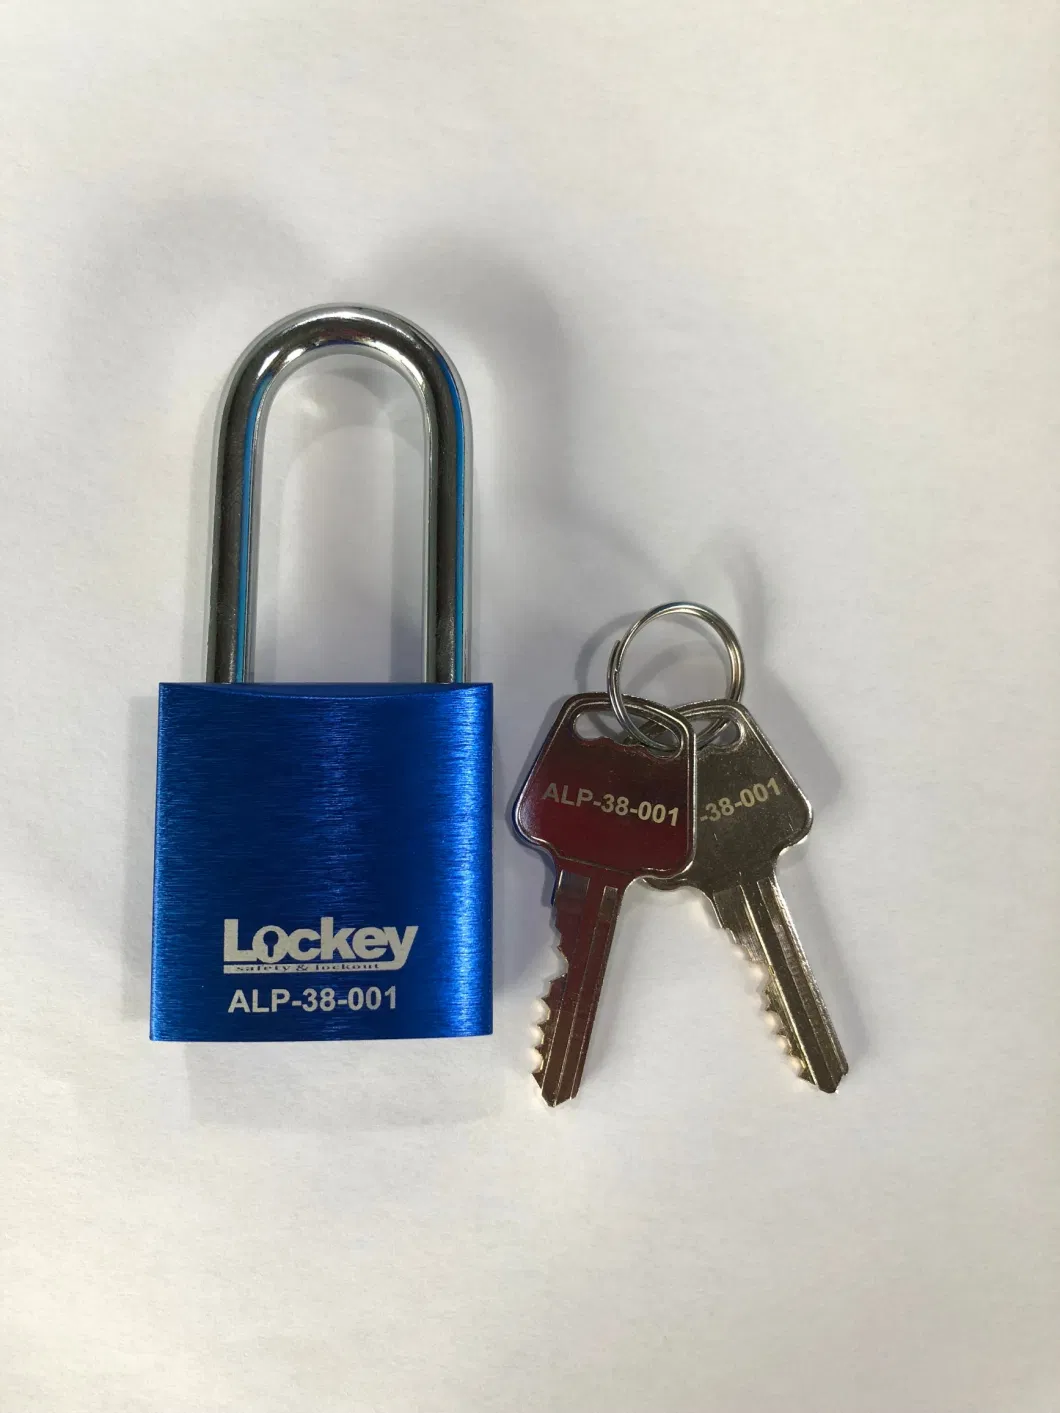 Lockey Loto Pad Lock Aluminum Safety Padlock with Master Key